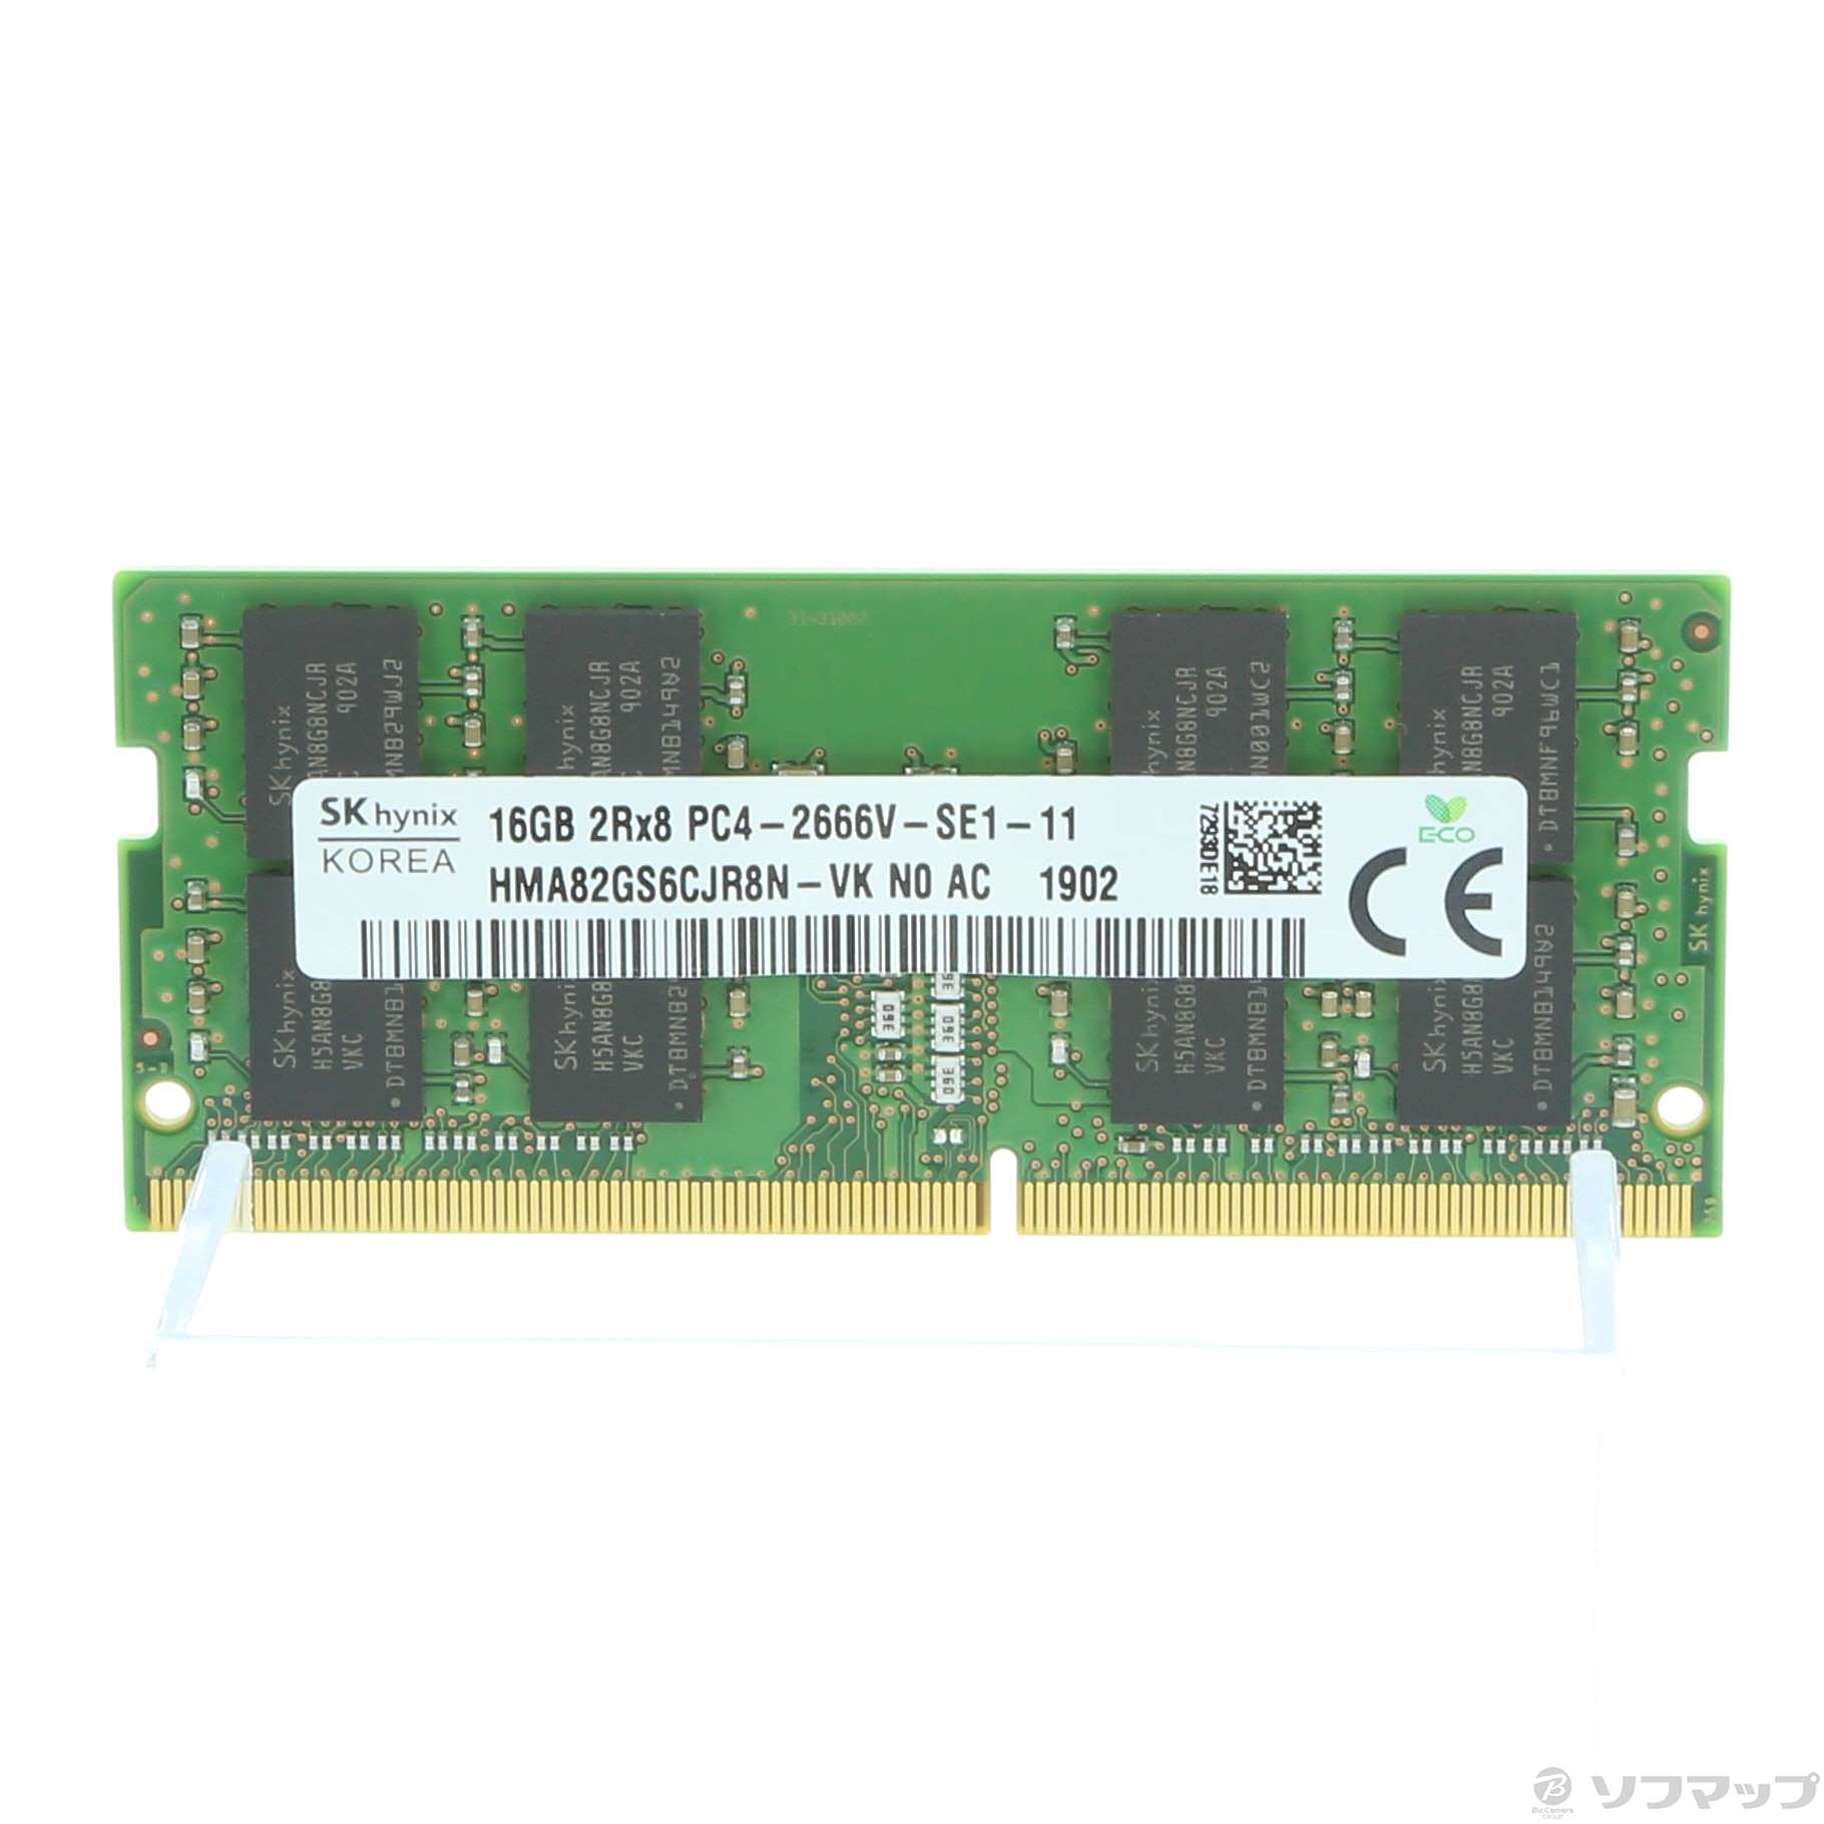 【大特価】DDR4-2666 【メモリ】16GB(8GBx2枚組)